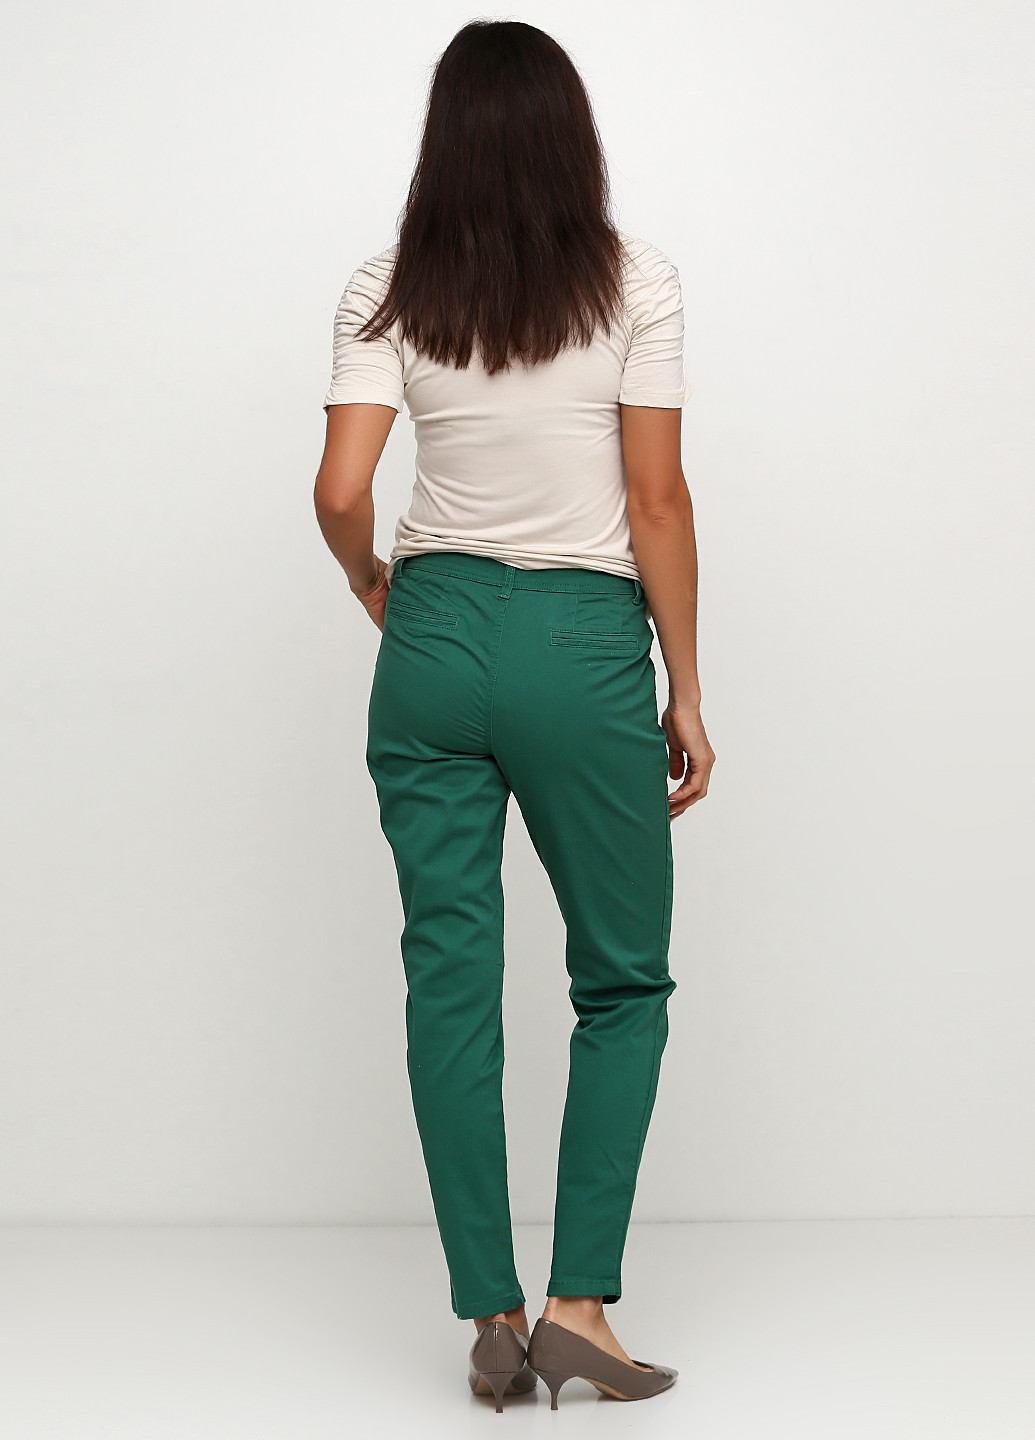 Зеленые демисезонные зауженные джинсы B.C. Best Connections